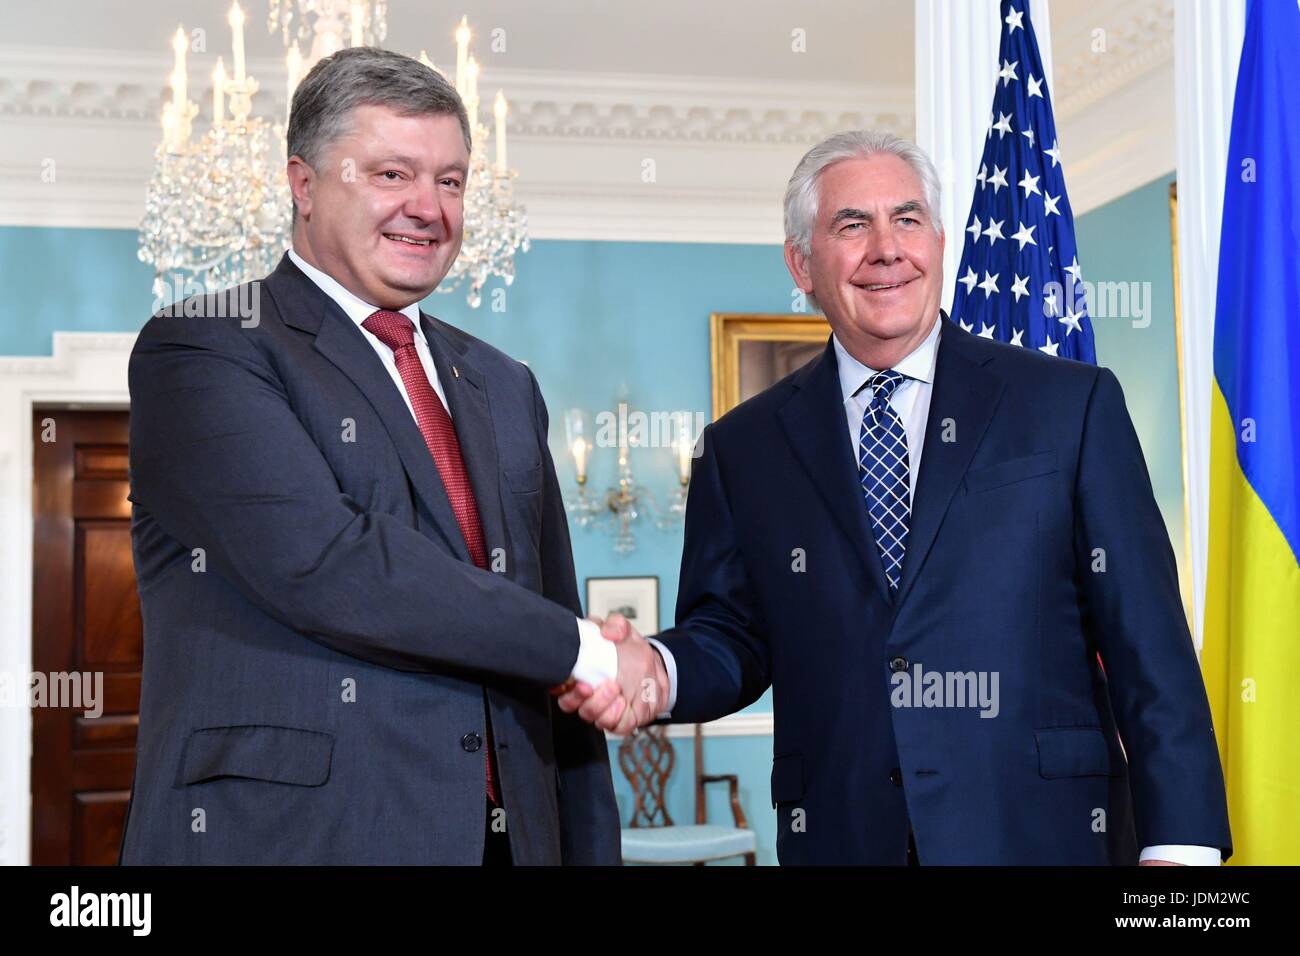 La secrétaire d'État des États-Unis, Rex Tillerson, gauche, se félicite le Président ukrainien Porochenko avant leur réunion bilatérale au département d'Etat, 20 juin 2017 à Washington, DC. Banque D'Images